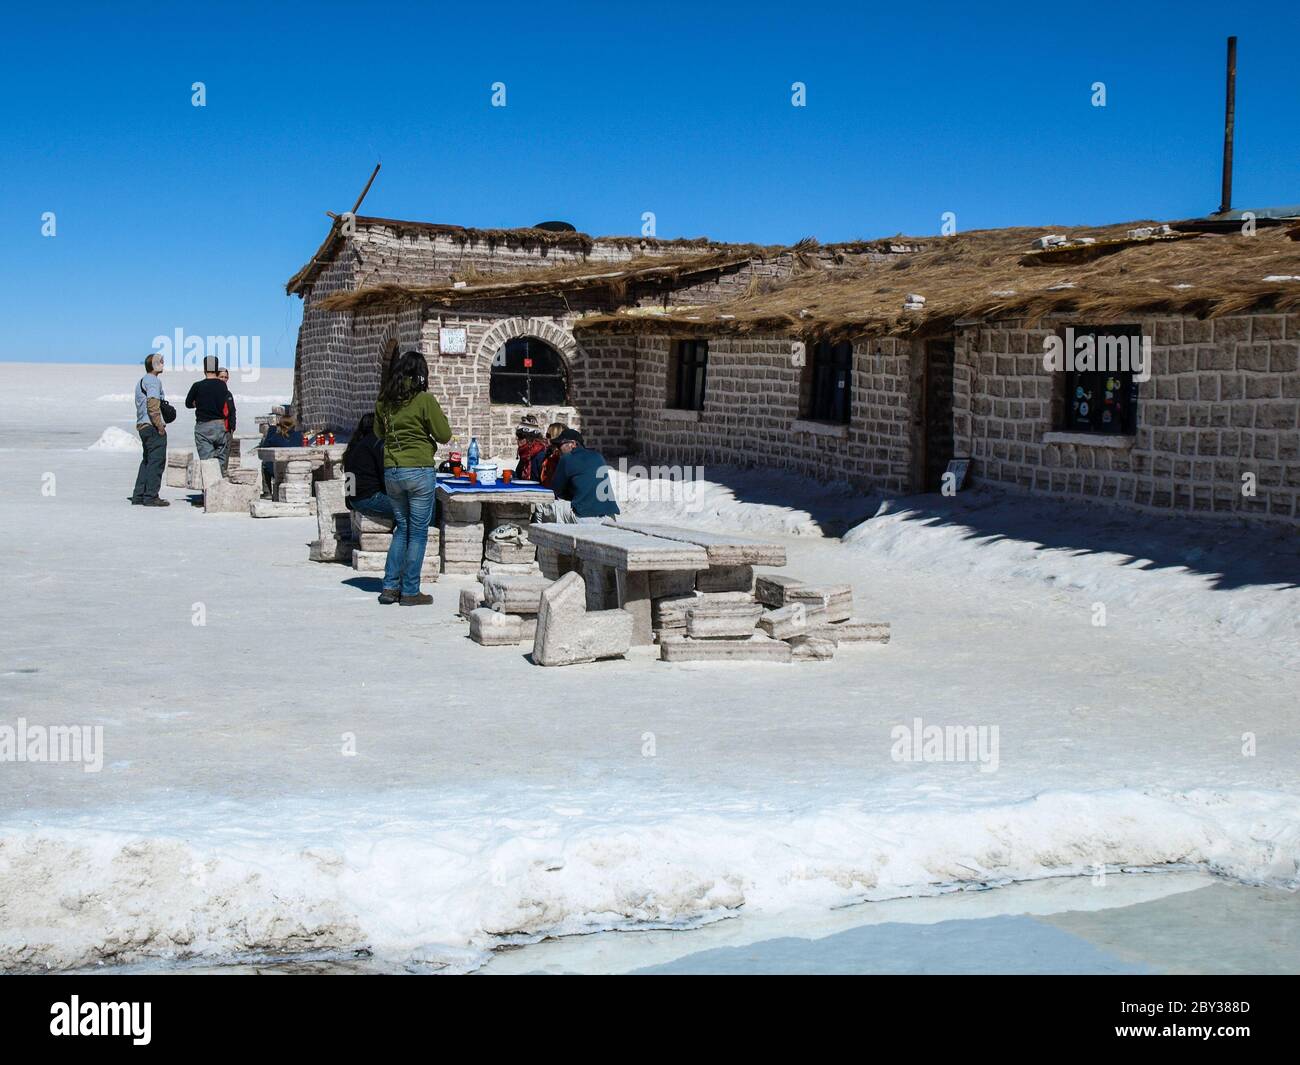 Hotel built of salt blocks on Salar de Uyuni, Bolivia Stock Photo